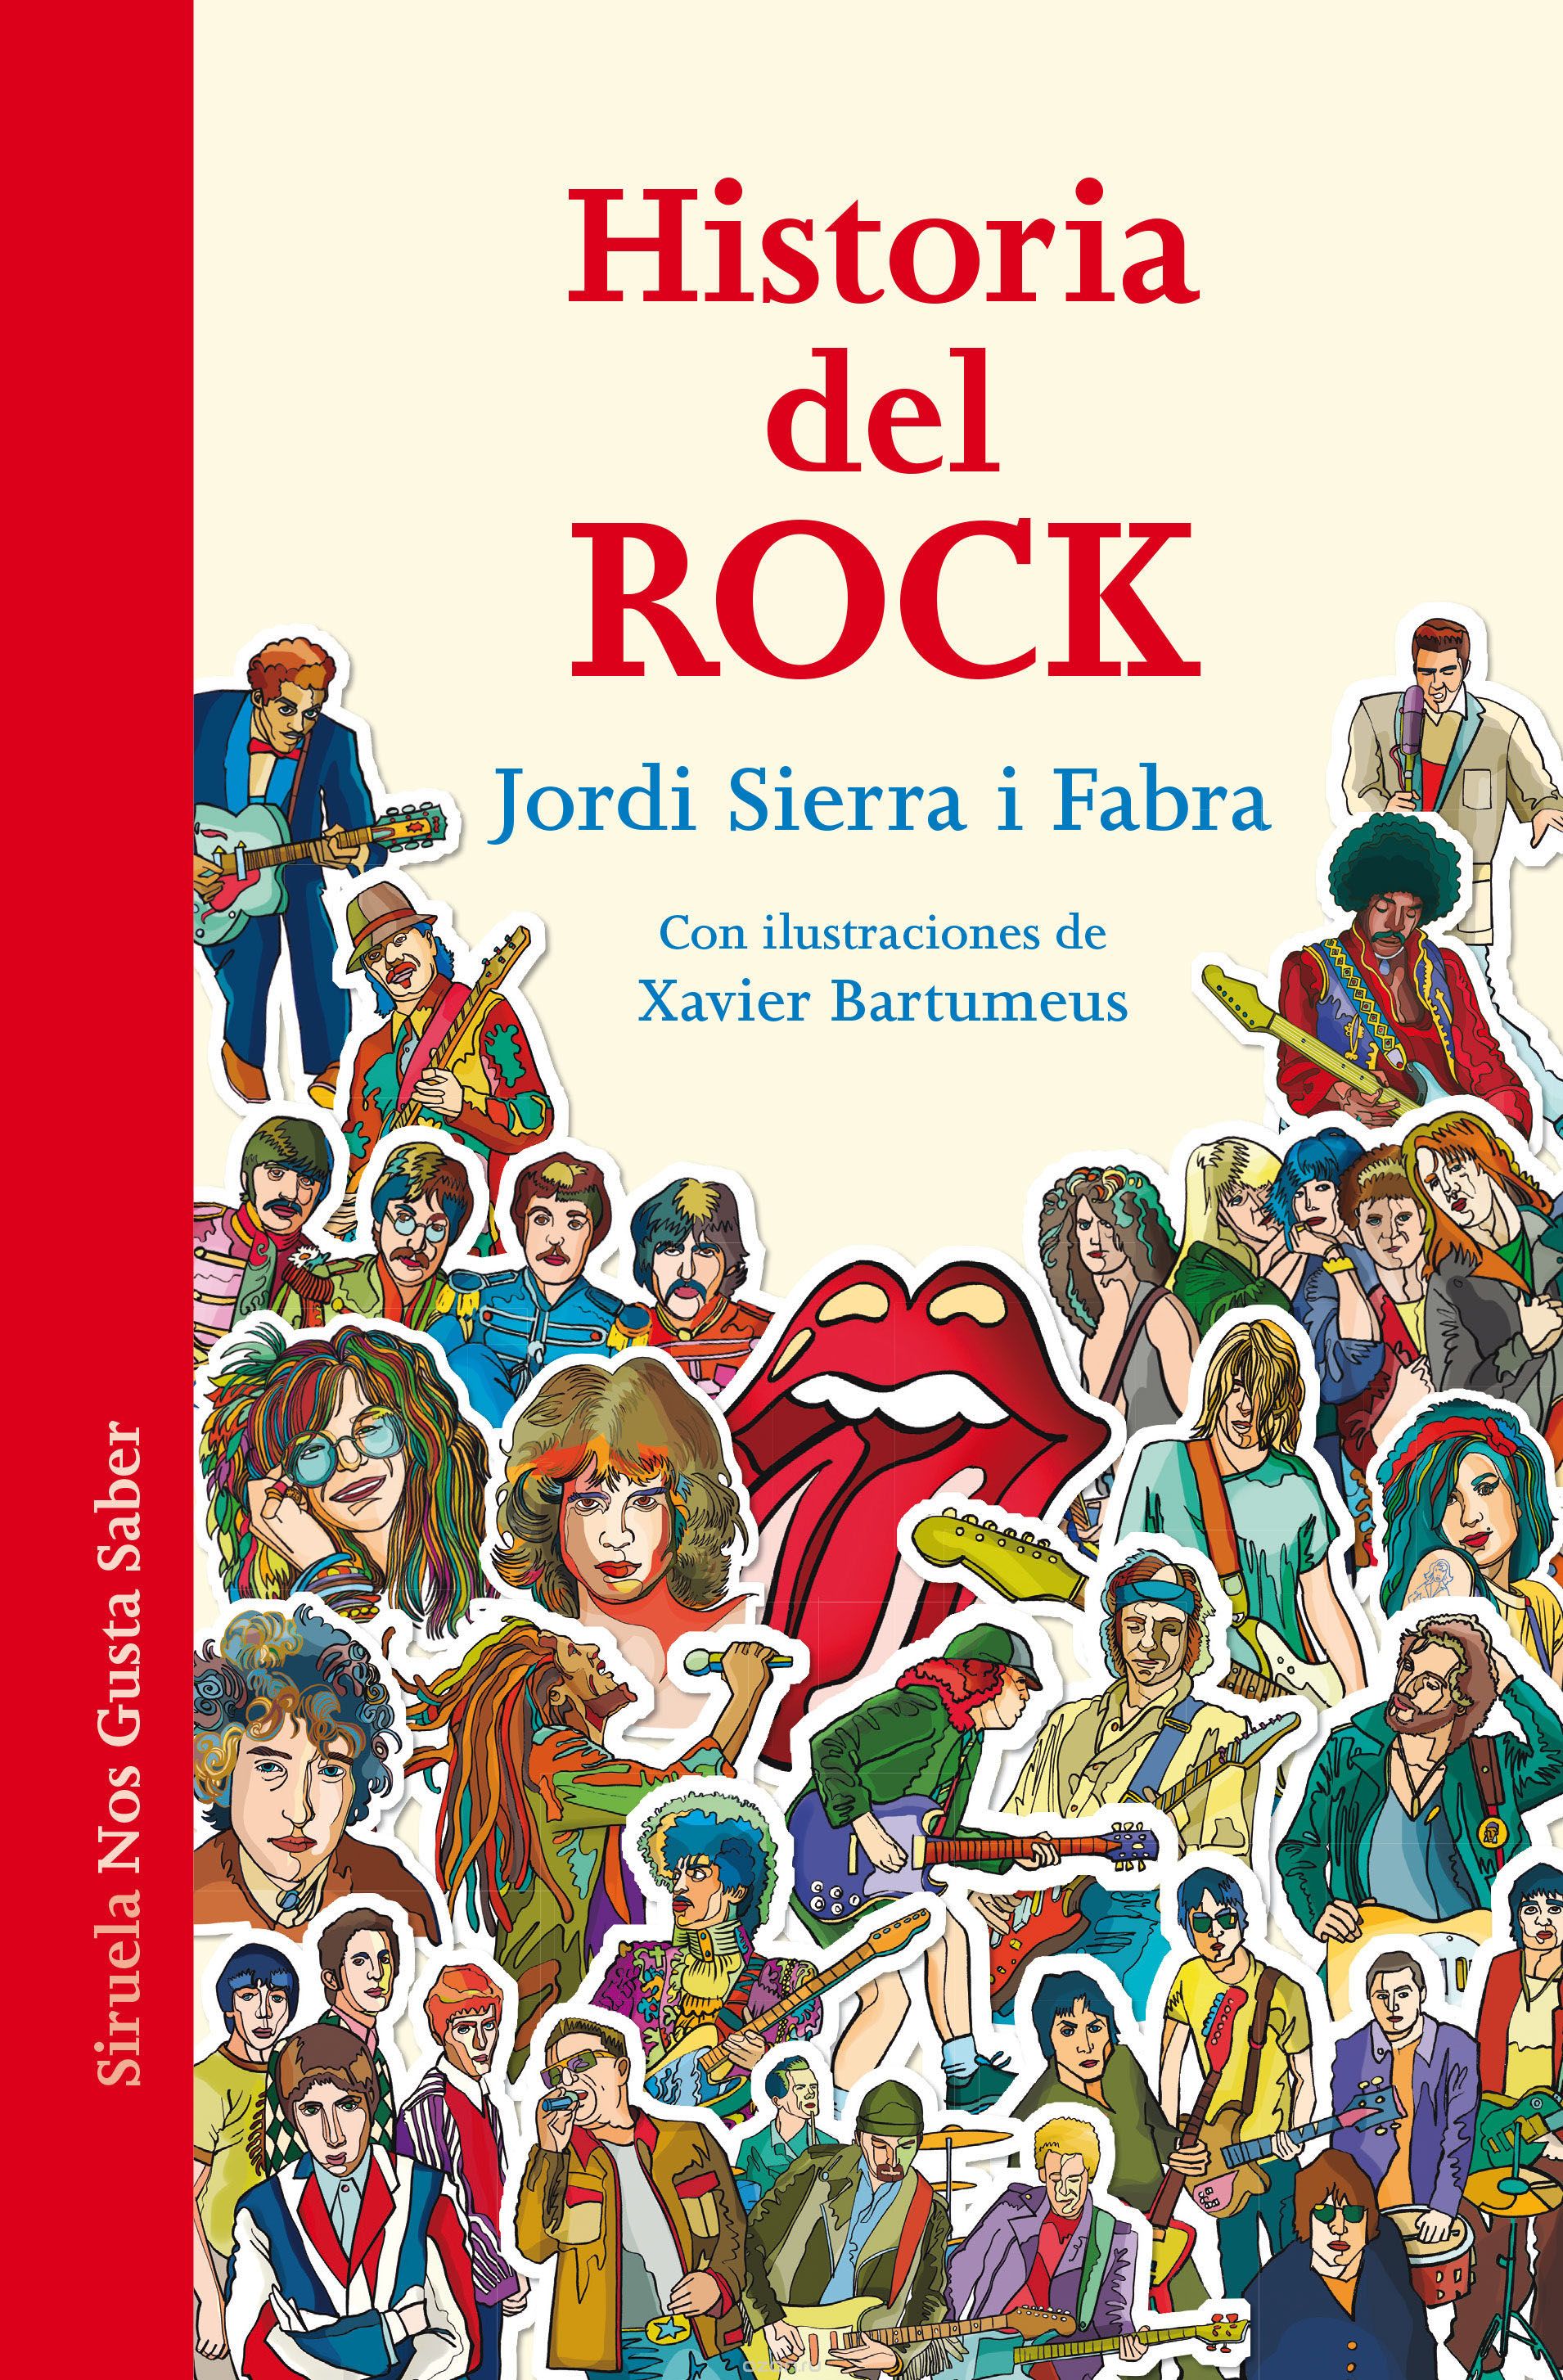 Скачать книгу "Historia Del Rock"